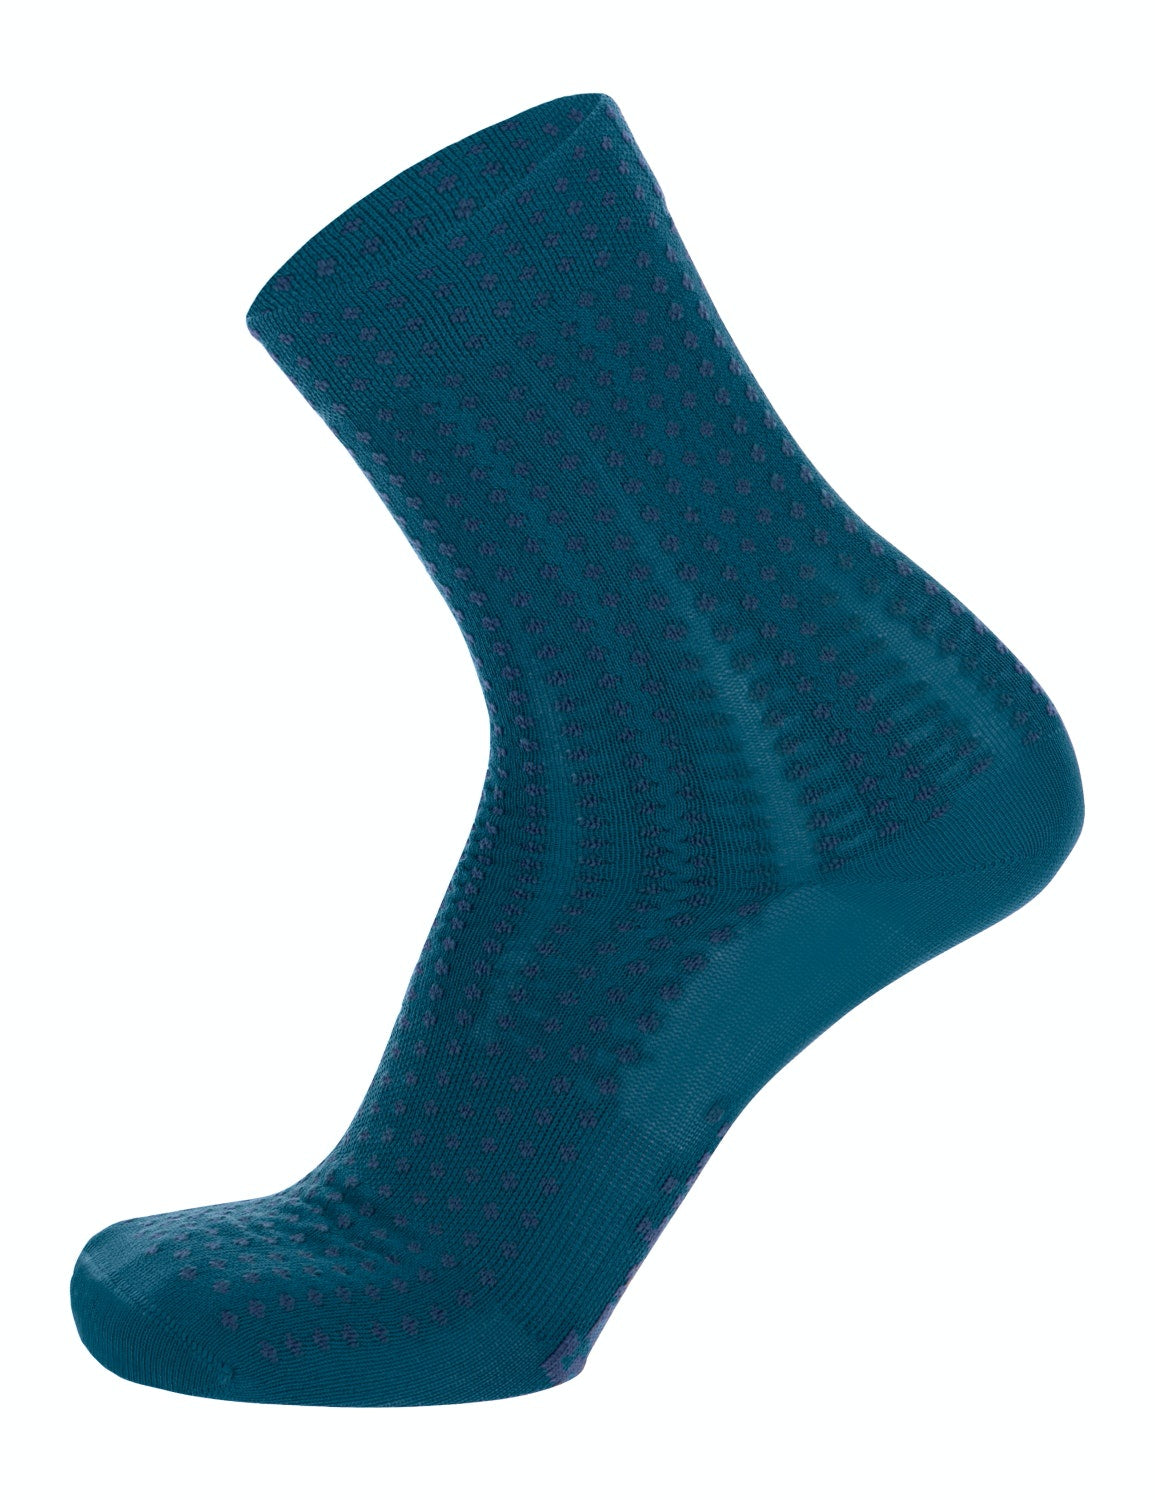 Santini Sfera Medium Profile Sock, 2021 - Cycle Closet